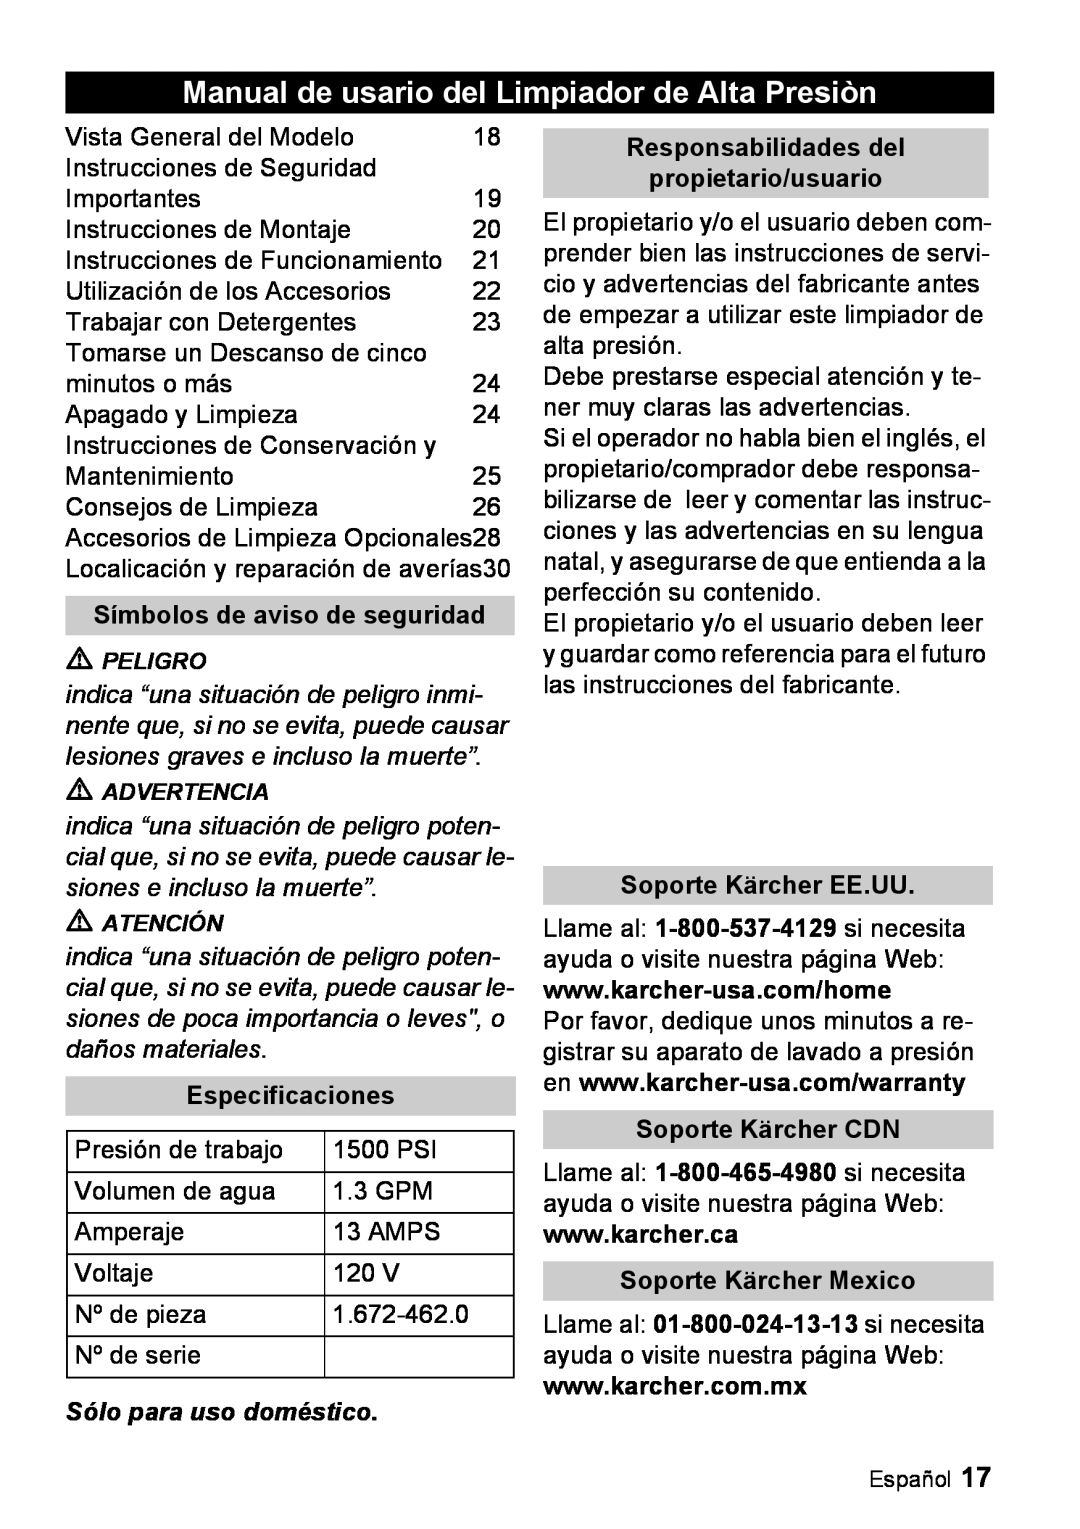 Karcher K 2.56M manual Manual de usario del Limpiador de Alta Presiòn, Símbolos de aviso de seguridad, Especificaciones 